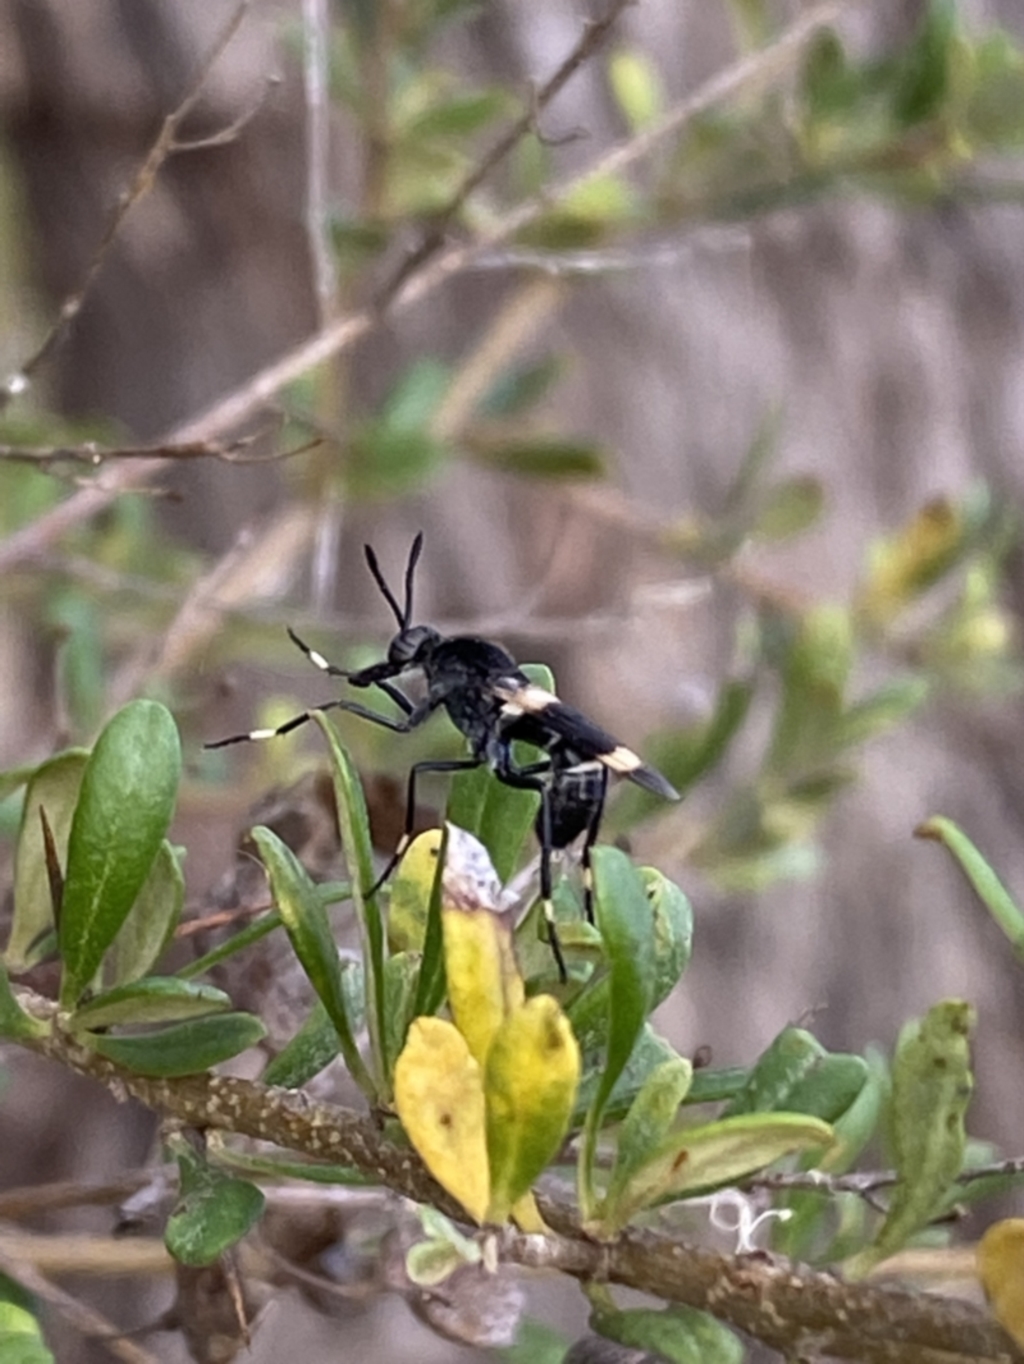 Agapophytus albobasalis at Jerrabomberra, NSW - 5 Jan 2022